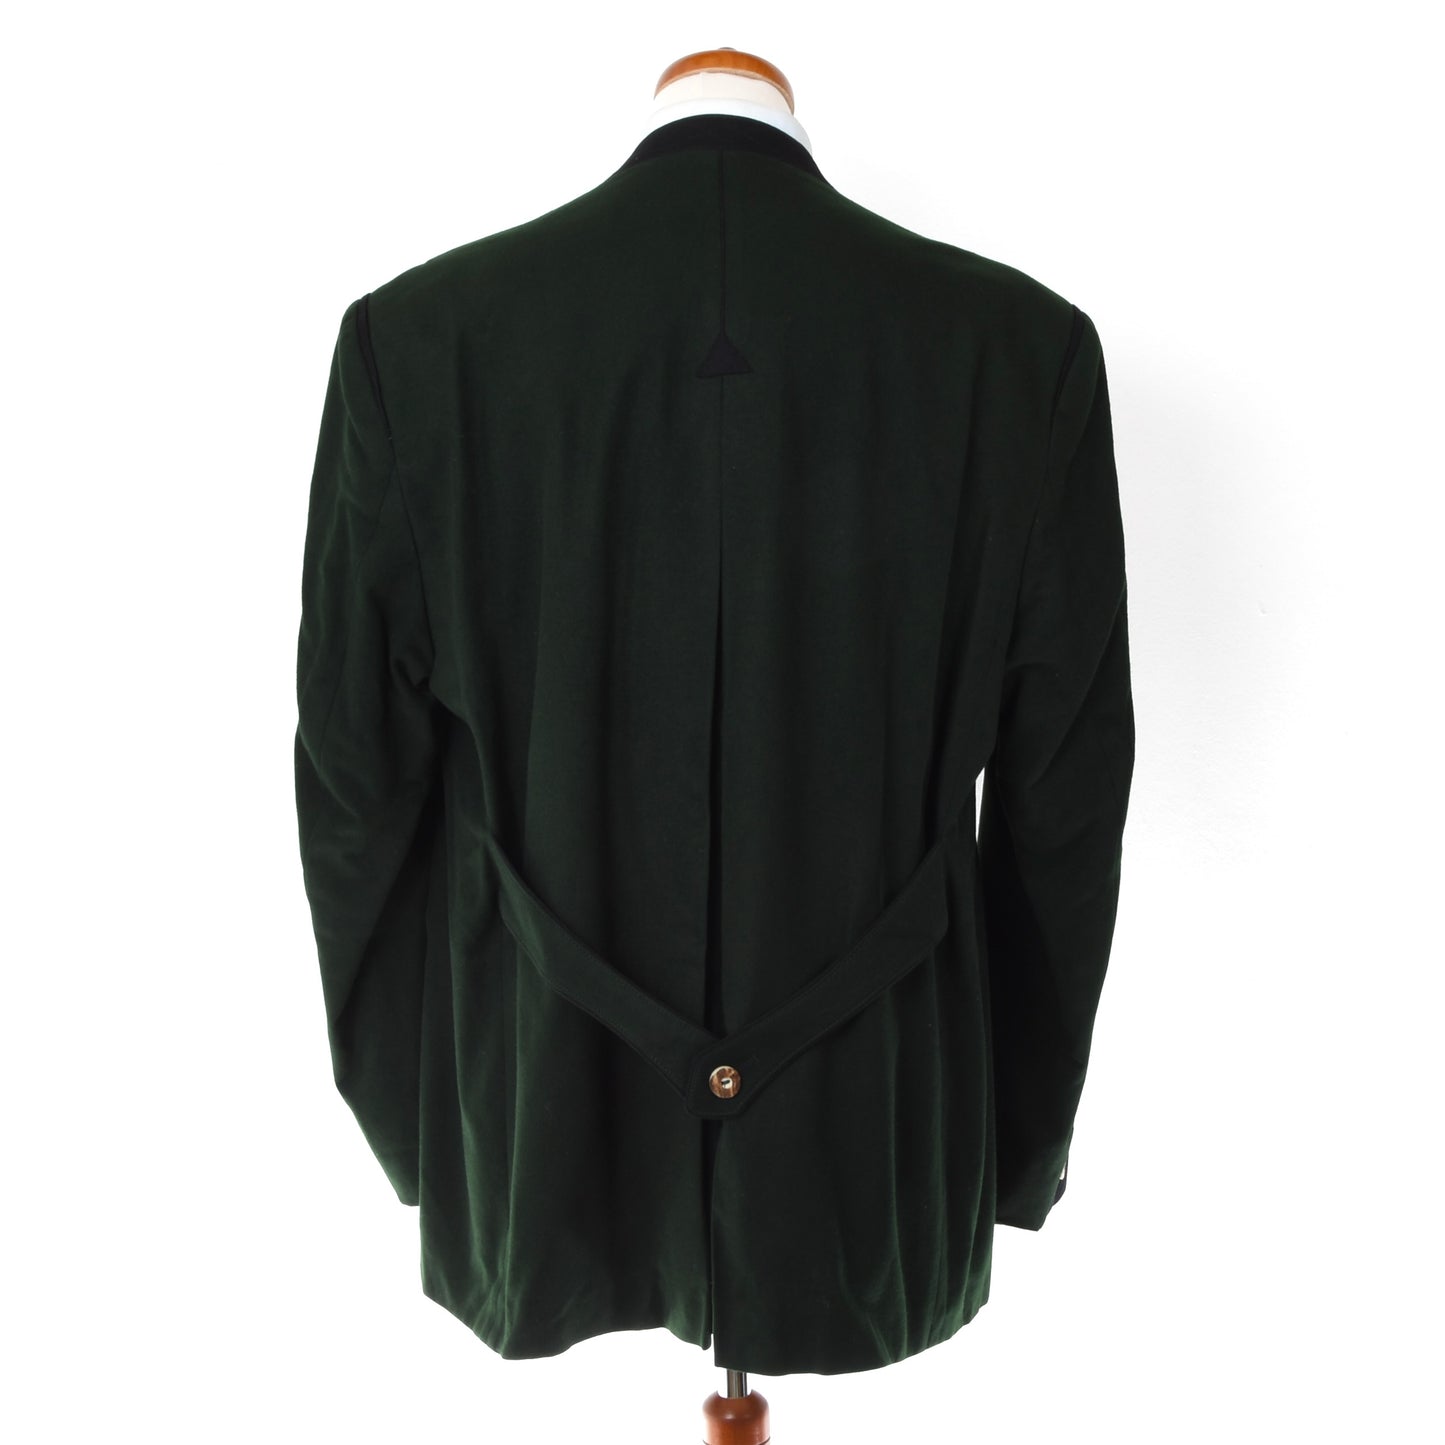 Loden Fürst Wool Janker/Jacket ca. 62.5cm - Green